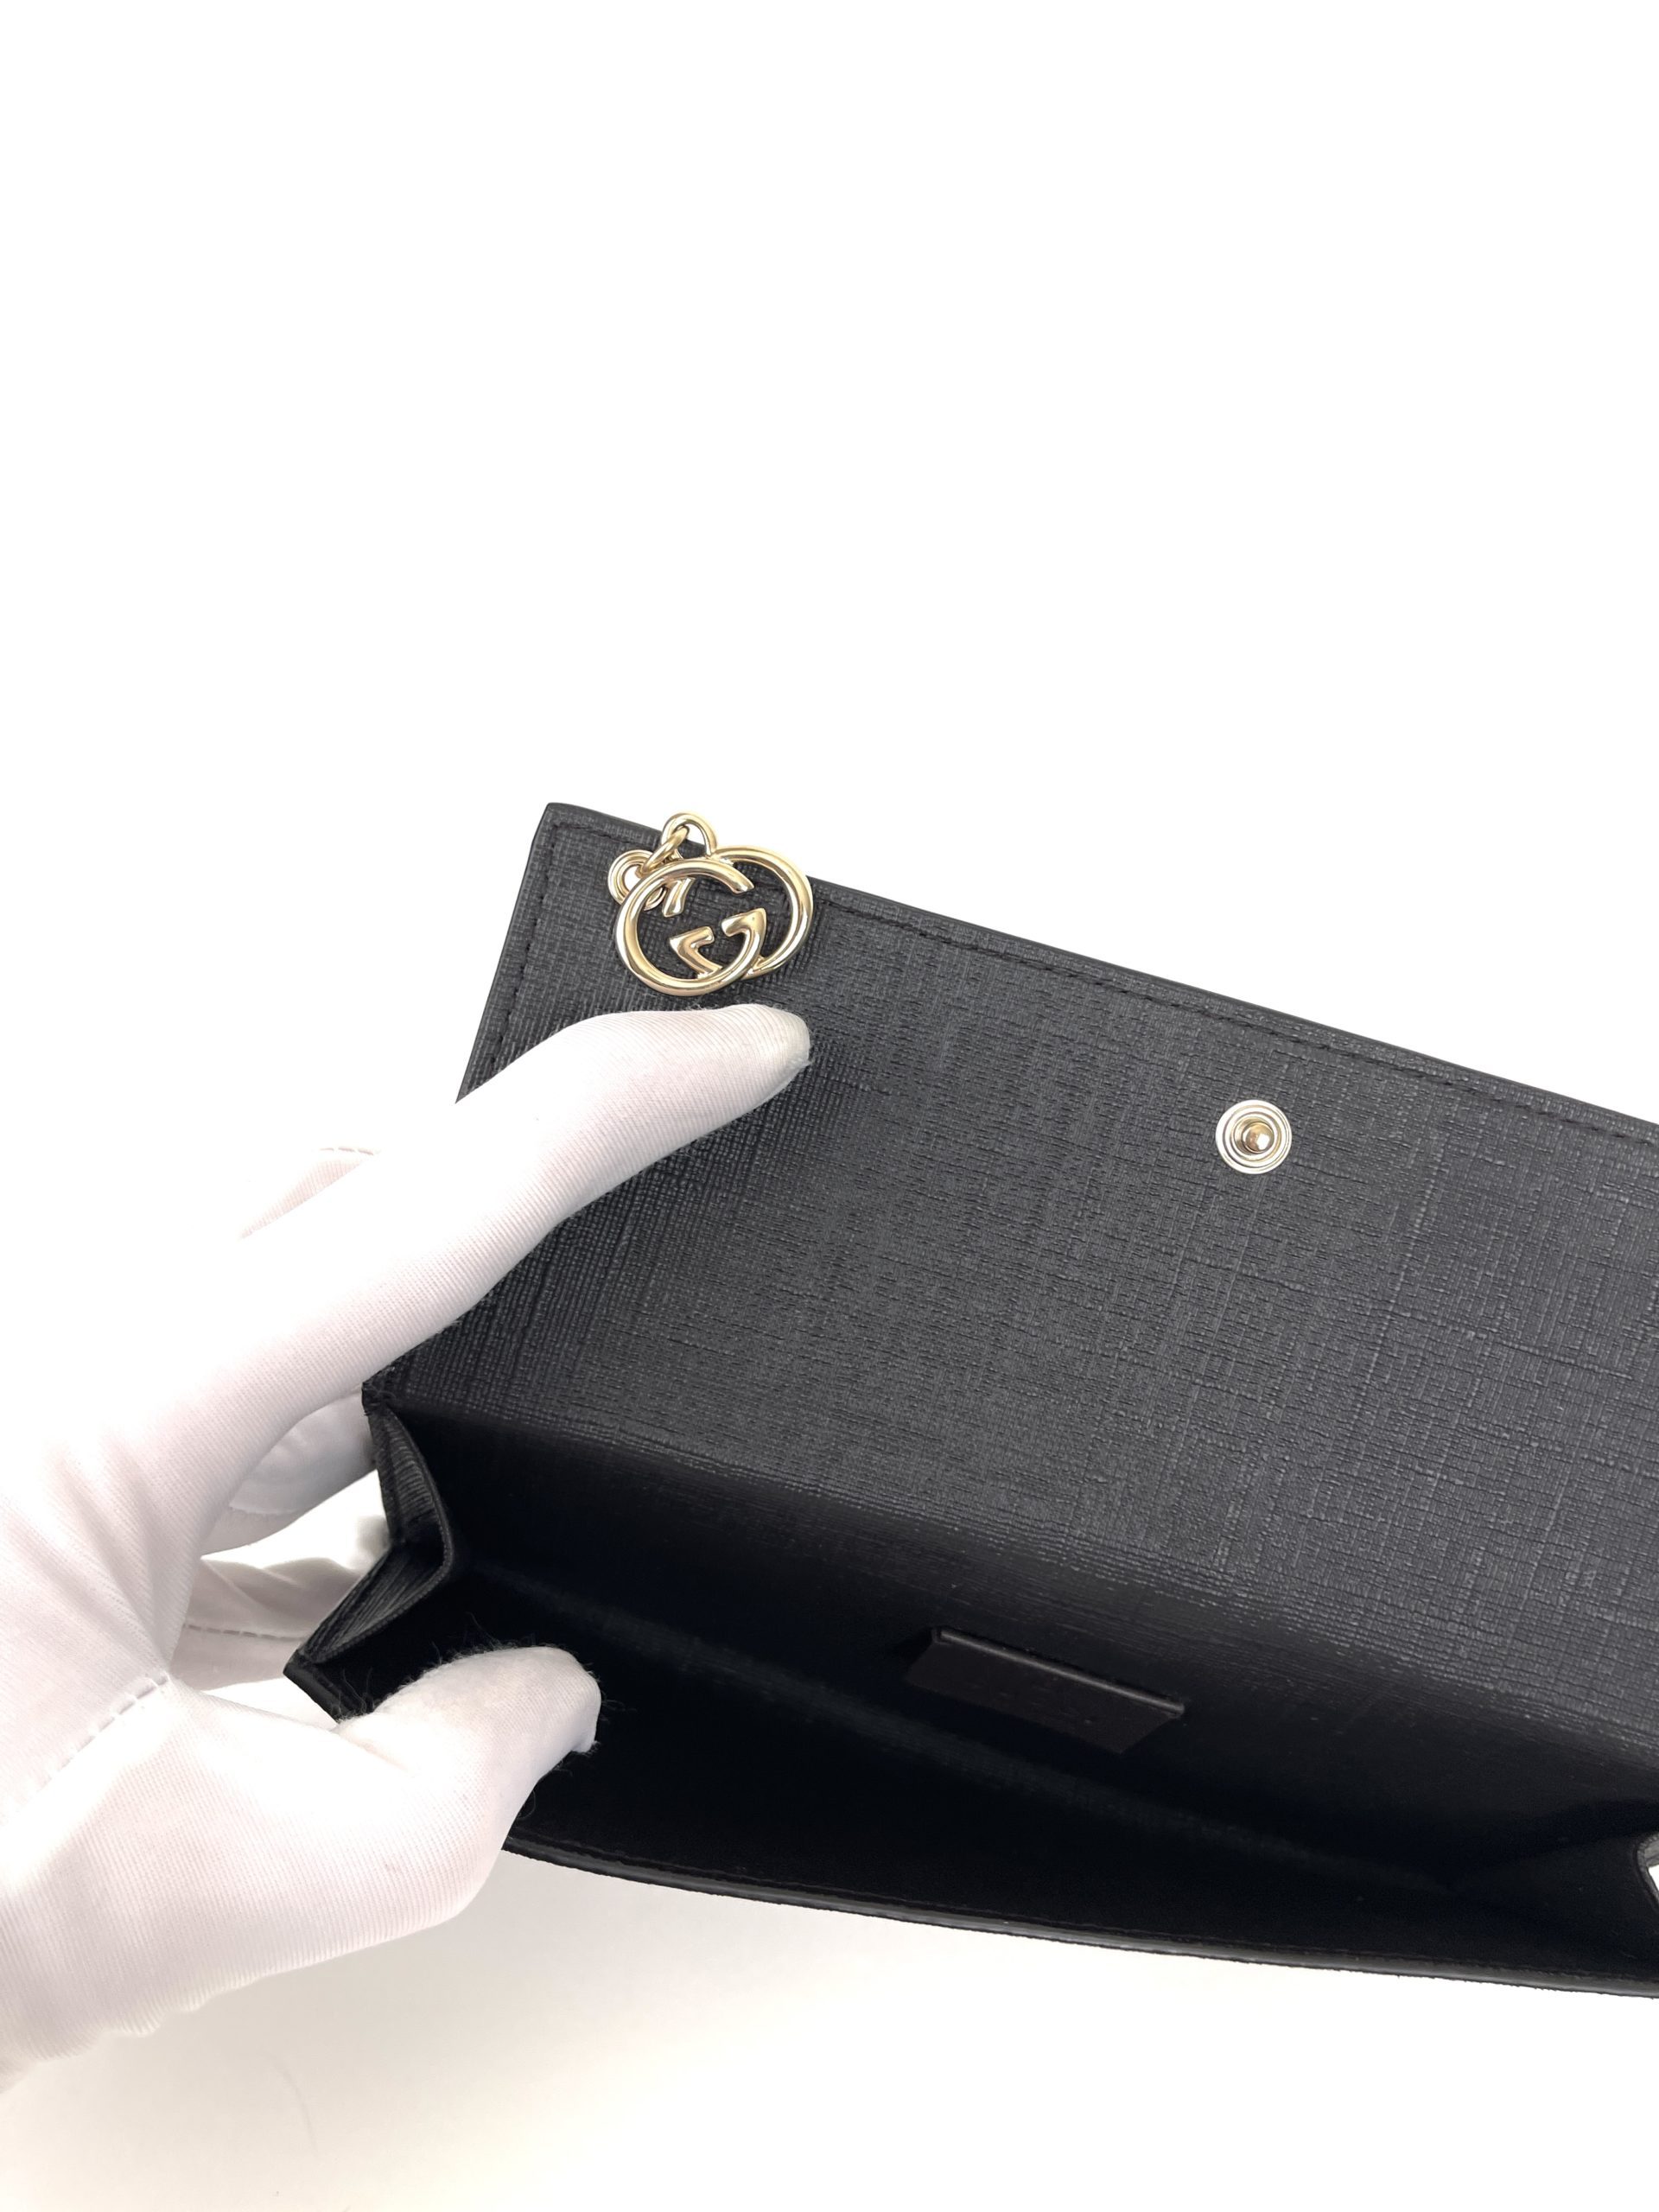 Gucci Supreme Monogram Card Holder Credit Case Dark Brown Wallet Beige  Italy NEW